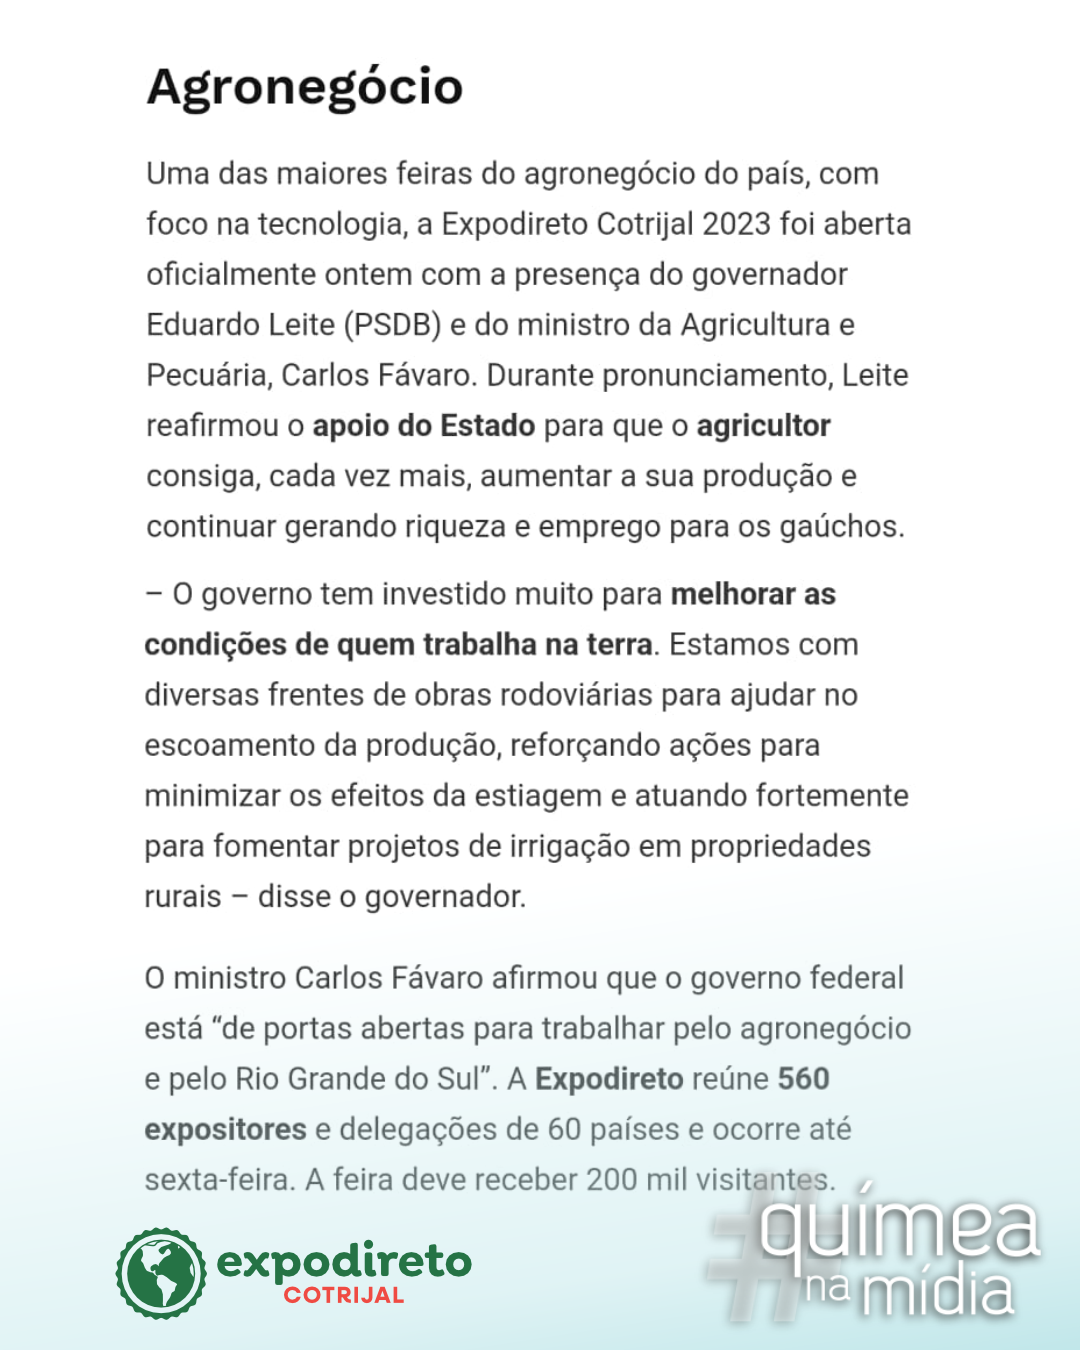 Químea e Orlla Energia são destaques em matéria do jornal Diário de Santa Maria